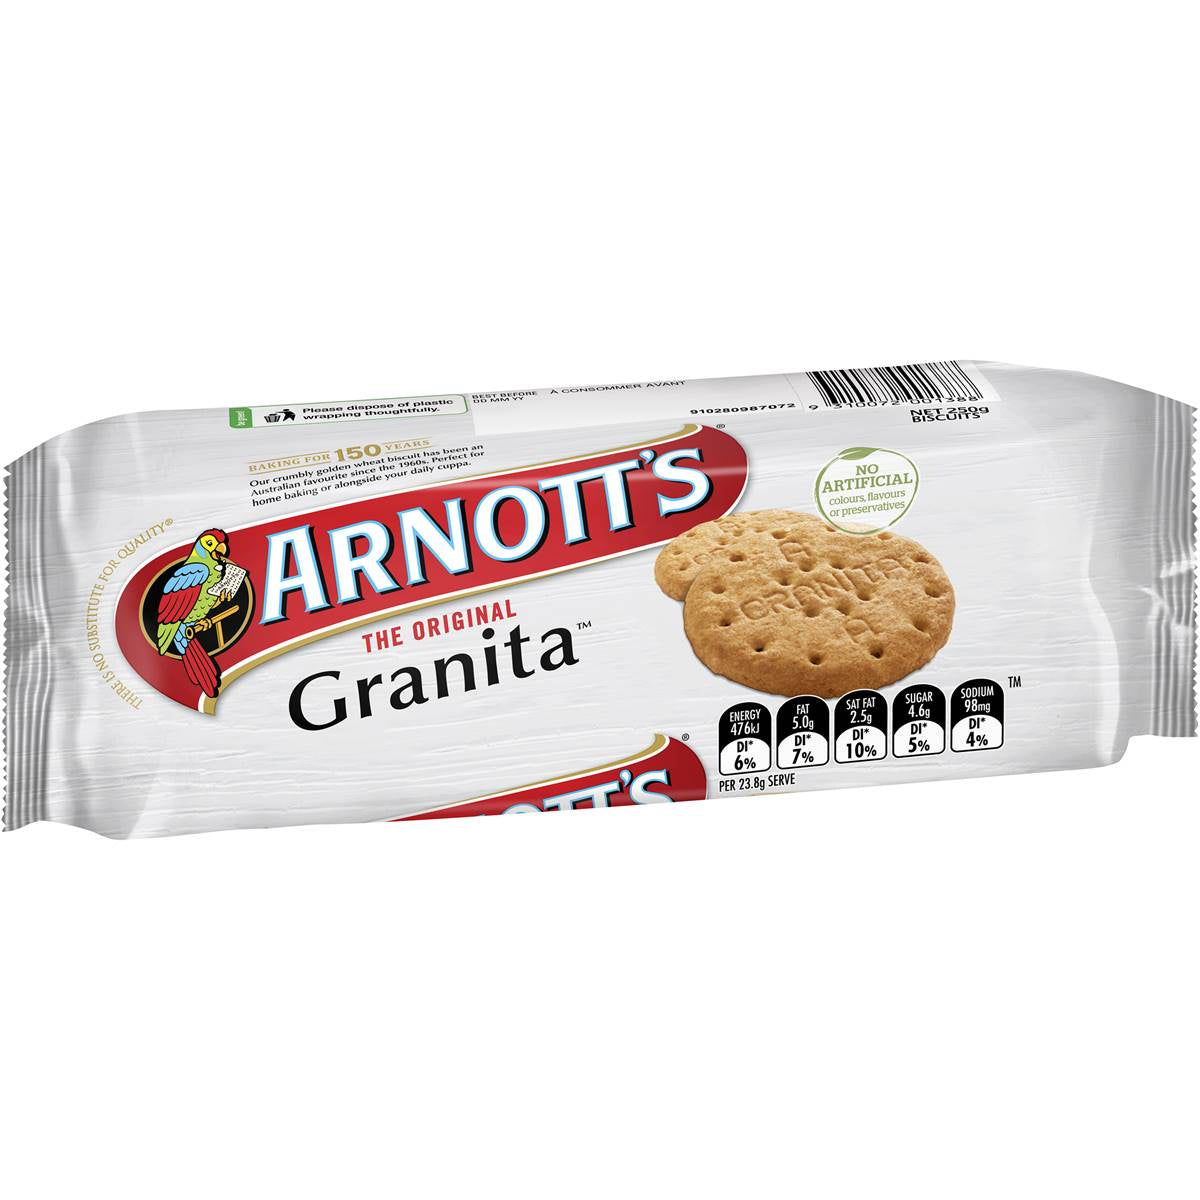 Arnotts Granita Biscuits 250G